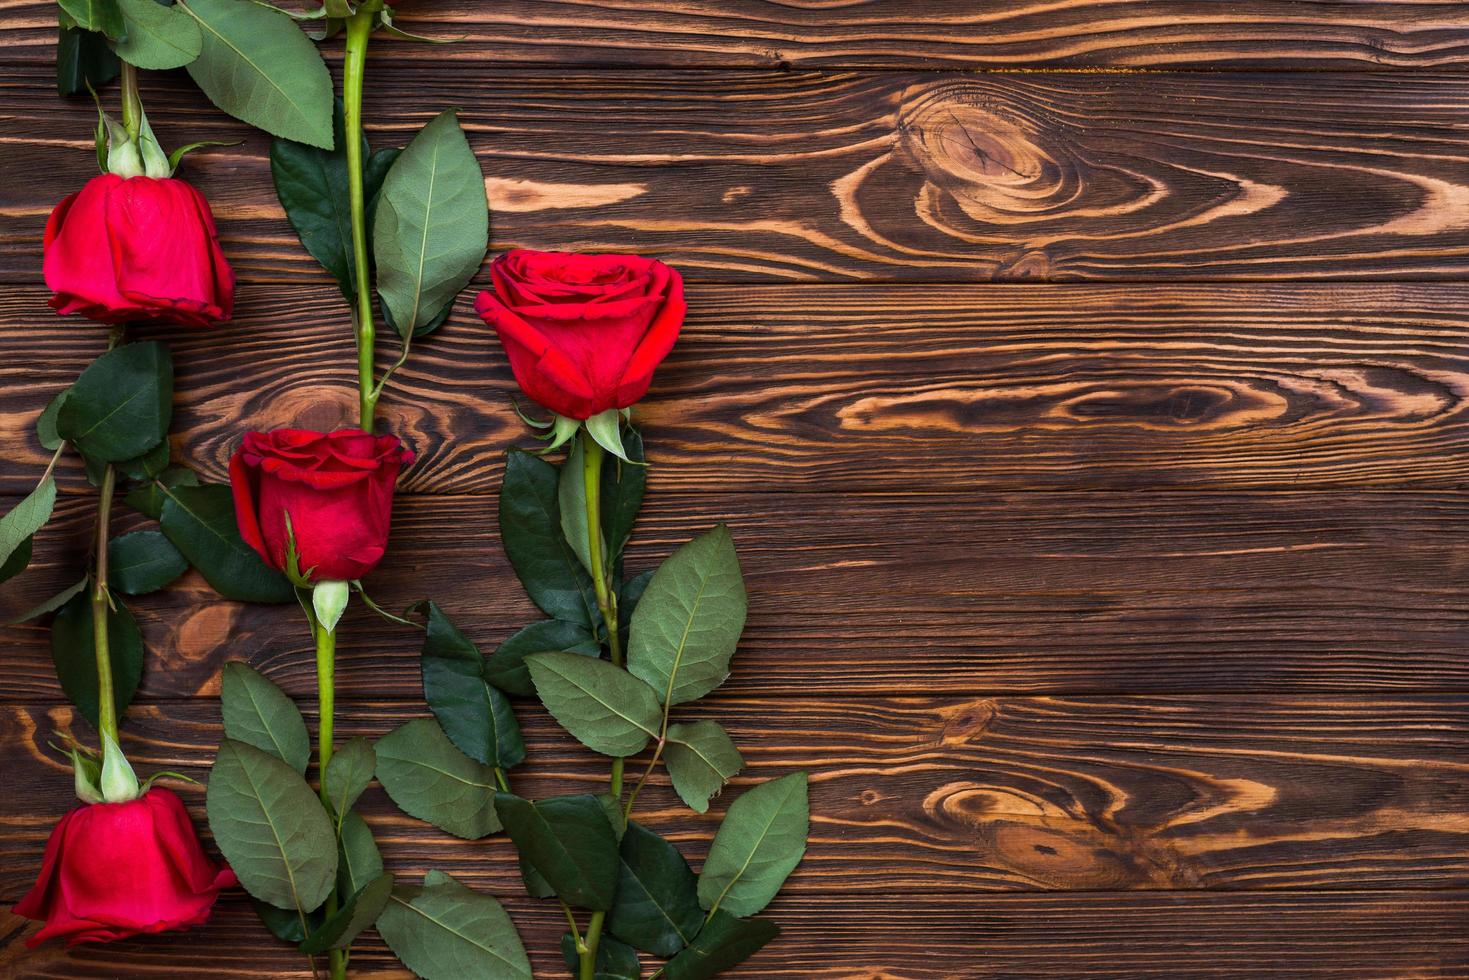 op een houten ondergrond staan rode rozen foto